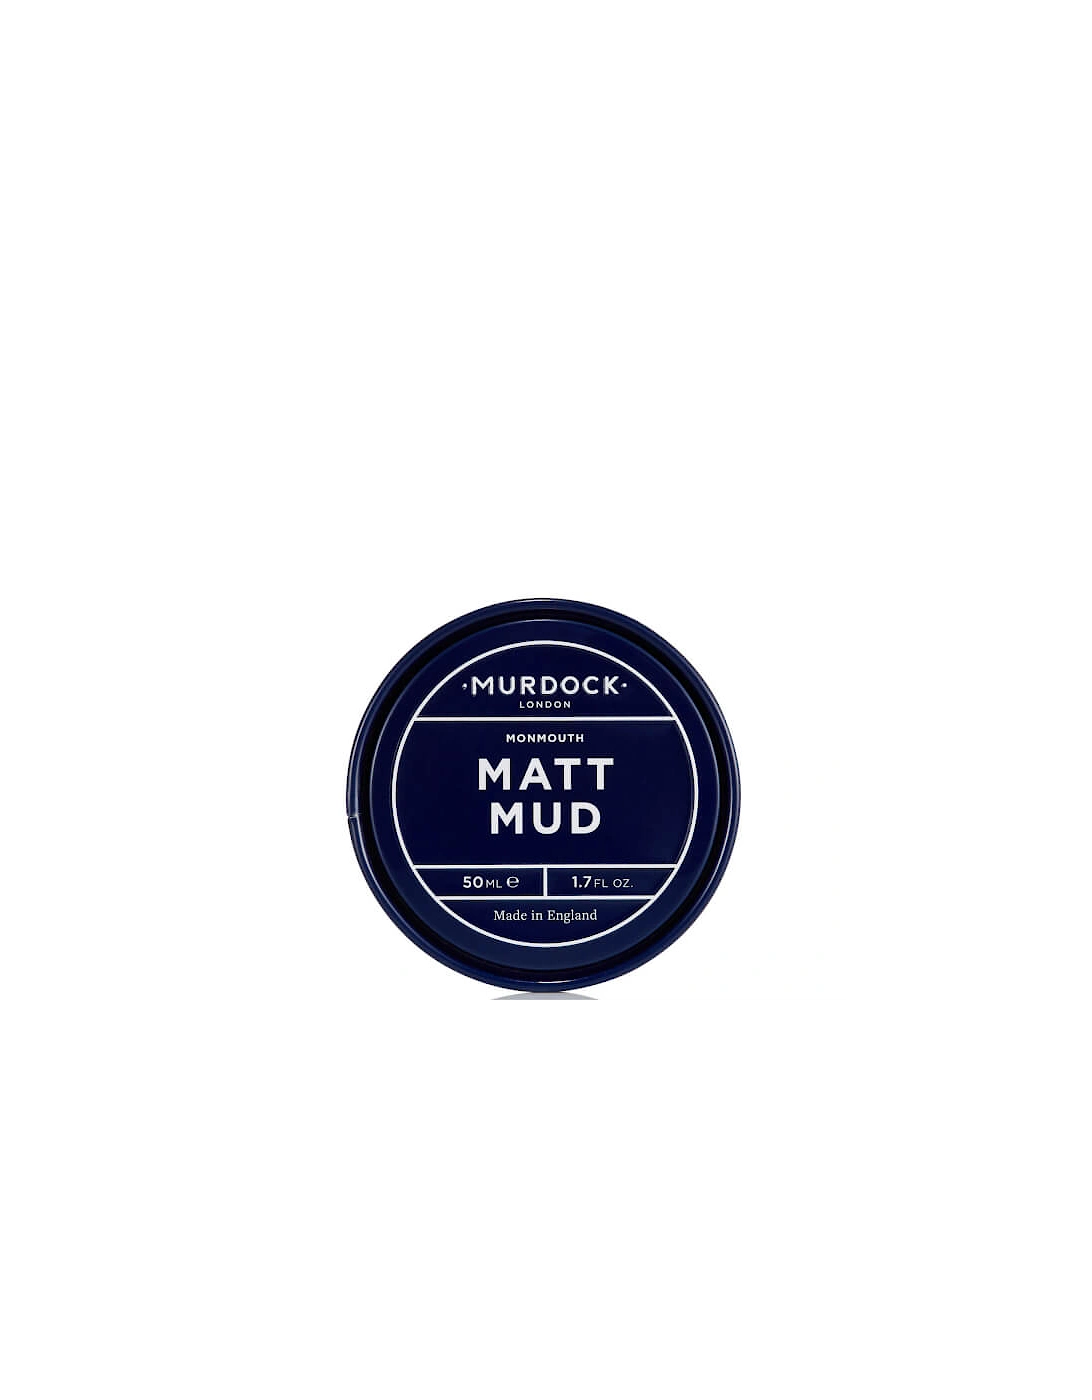 Matt Mud 50ml, 2 of 1